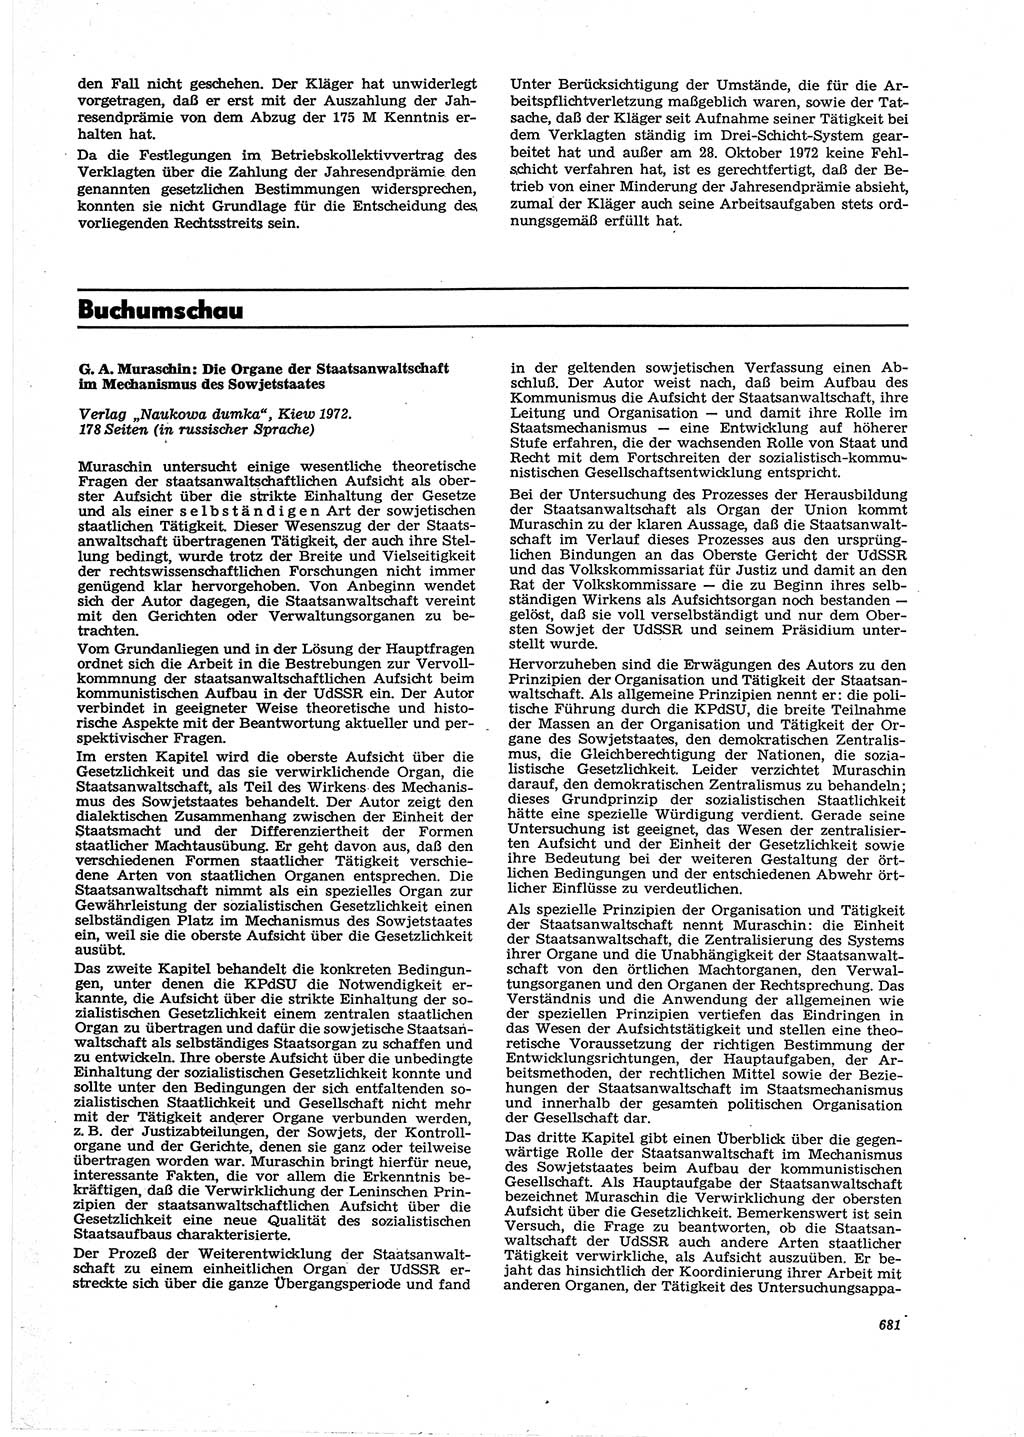 Neue Justiz (NJ), Zeitschrift für Recht und Rechtswissenschaft [Deutsche Demokratische Republik (DDR)], 27. Jahrgang 1973, Seite 681 (NJ DDR 1973, S. 681)